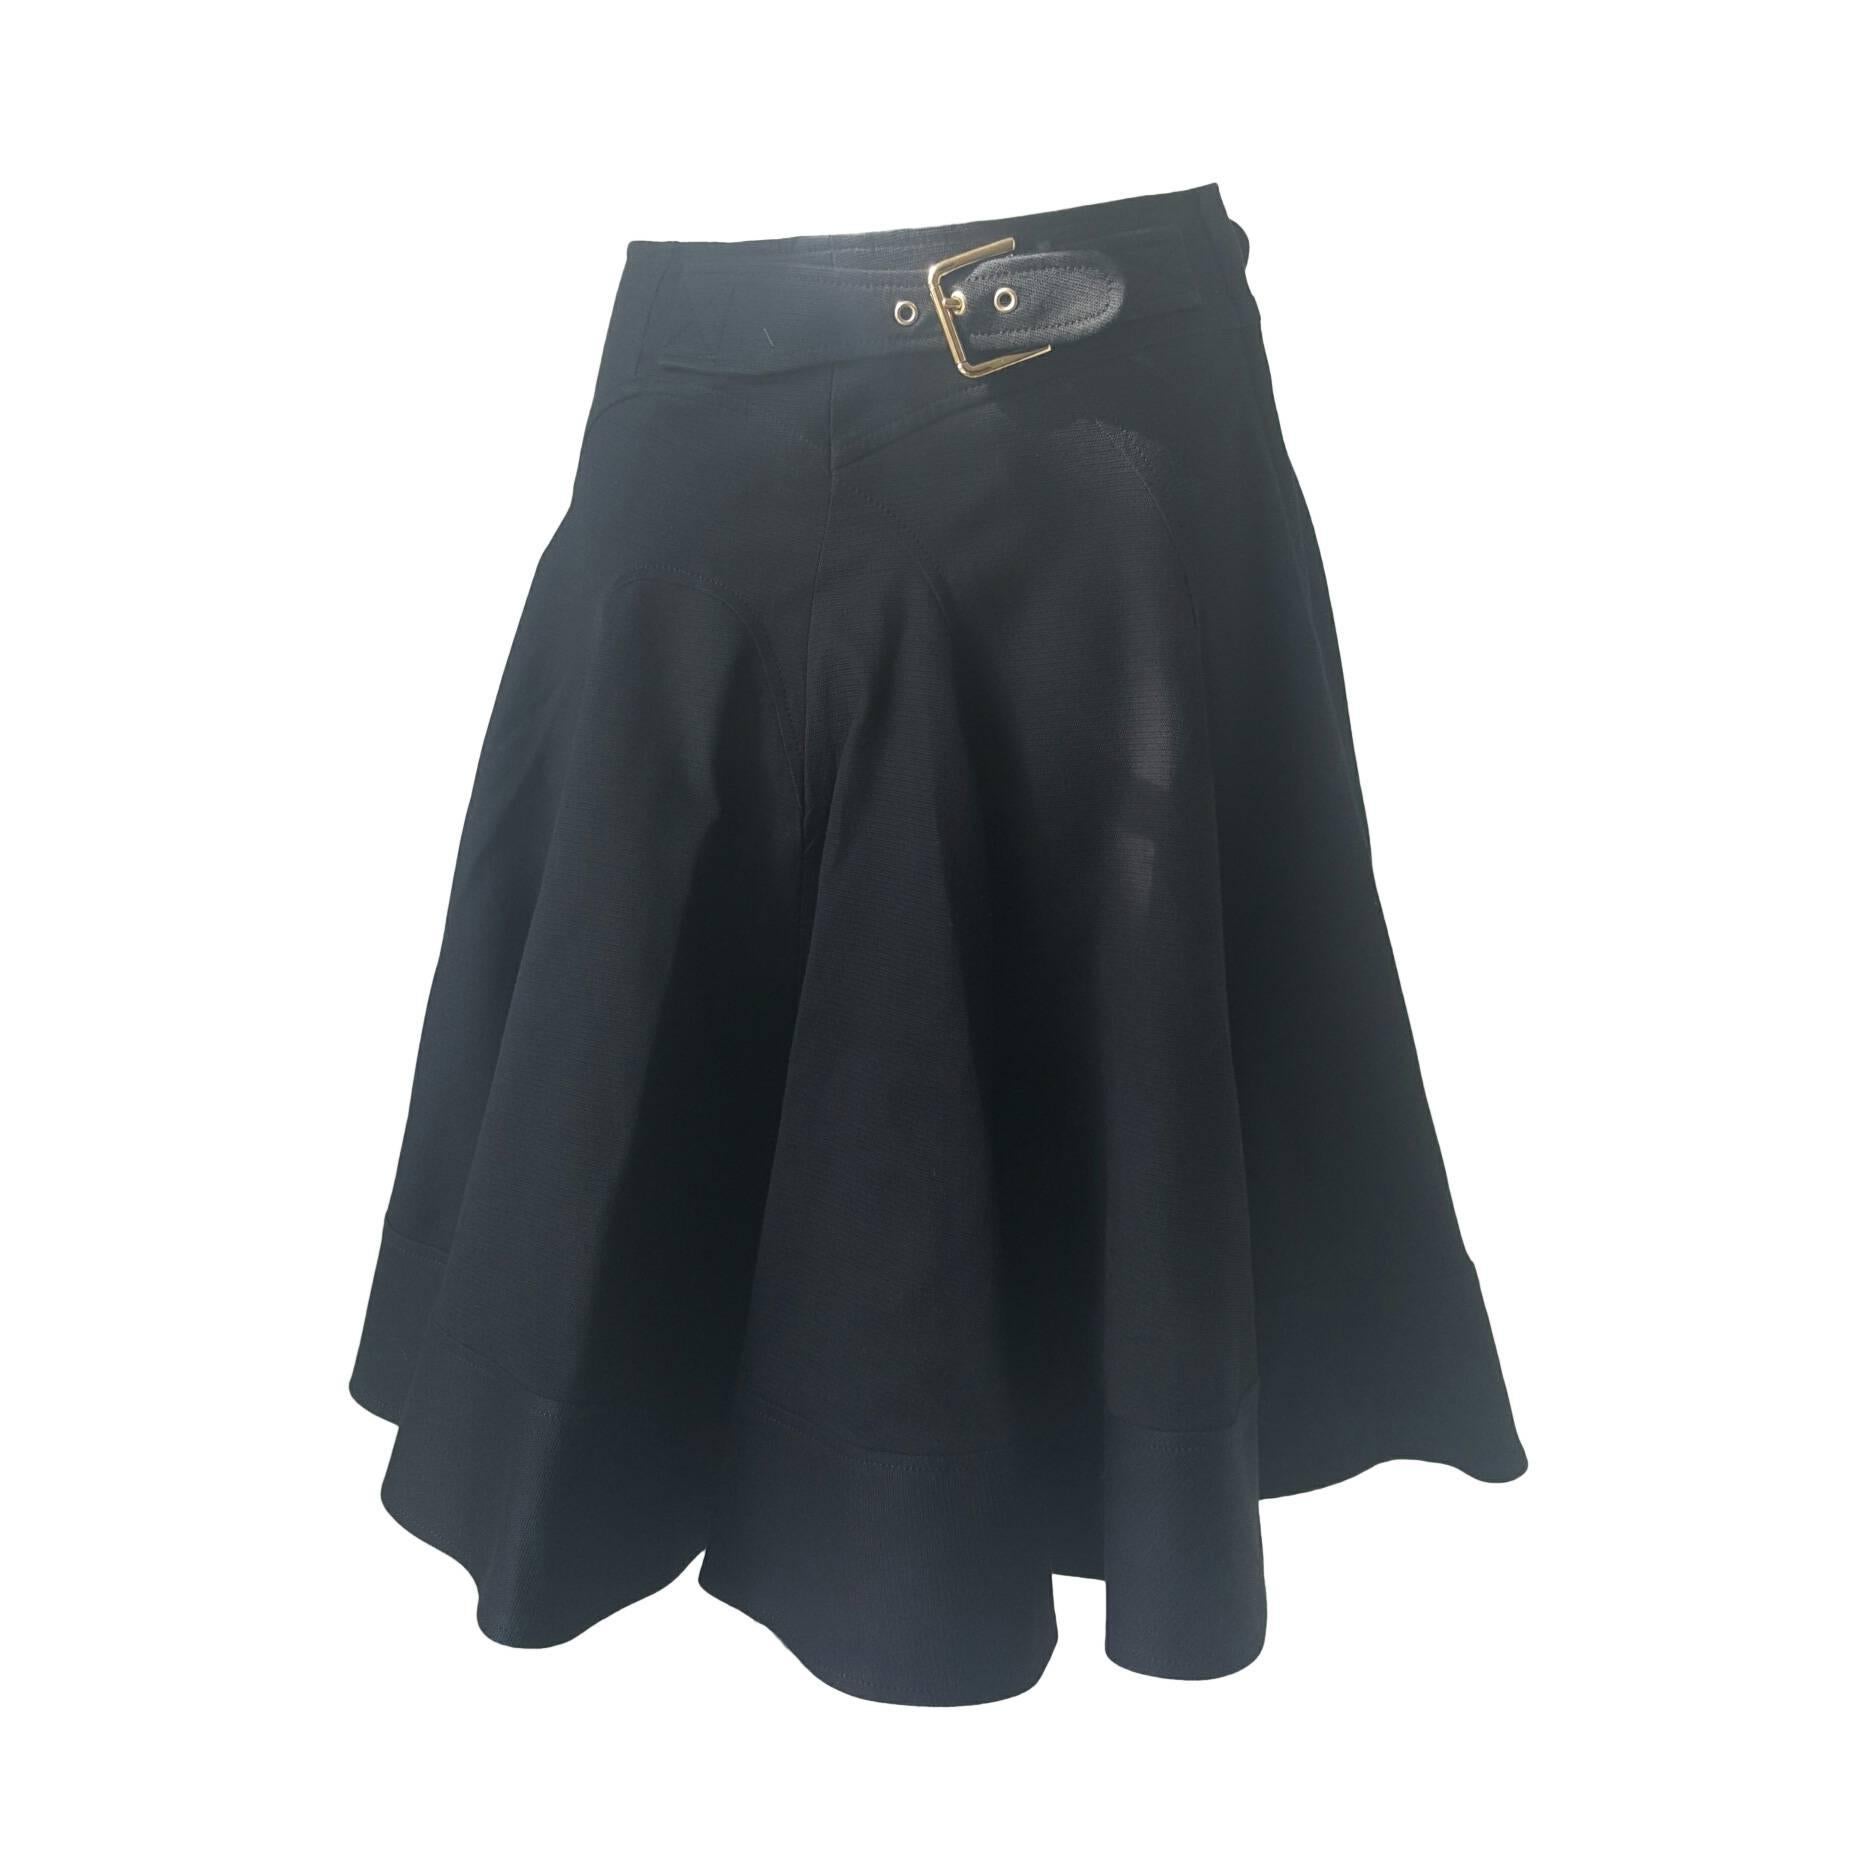 2000s Dolce & Gabbana black skirt